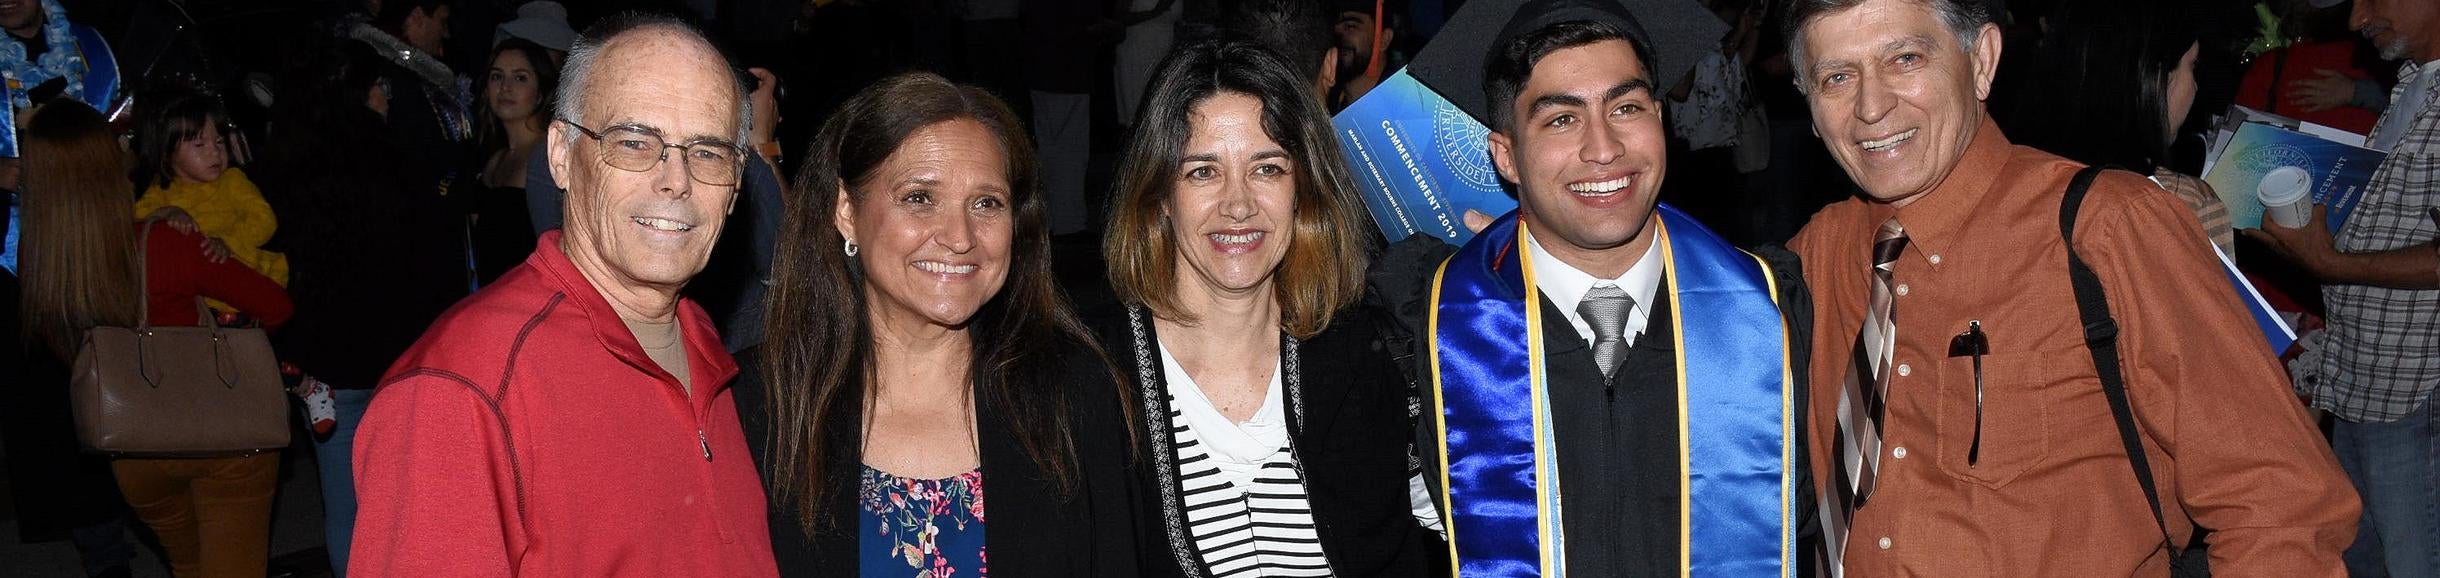 family posed around engineering graduate